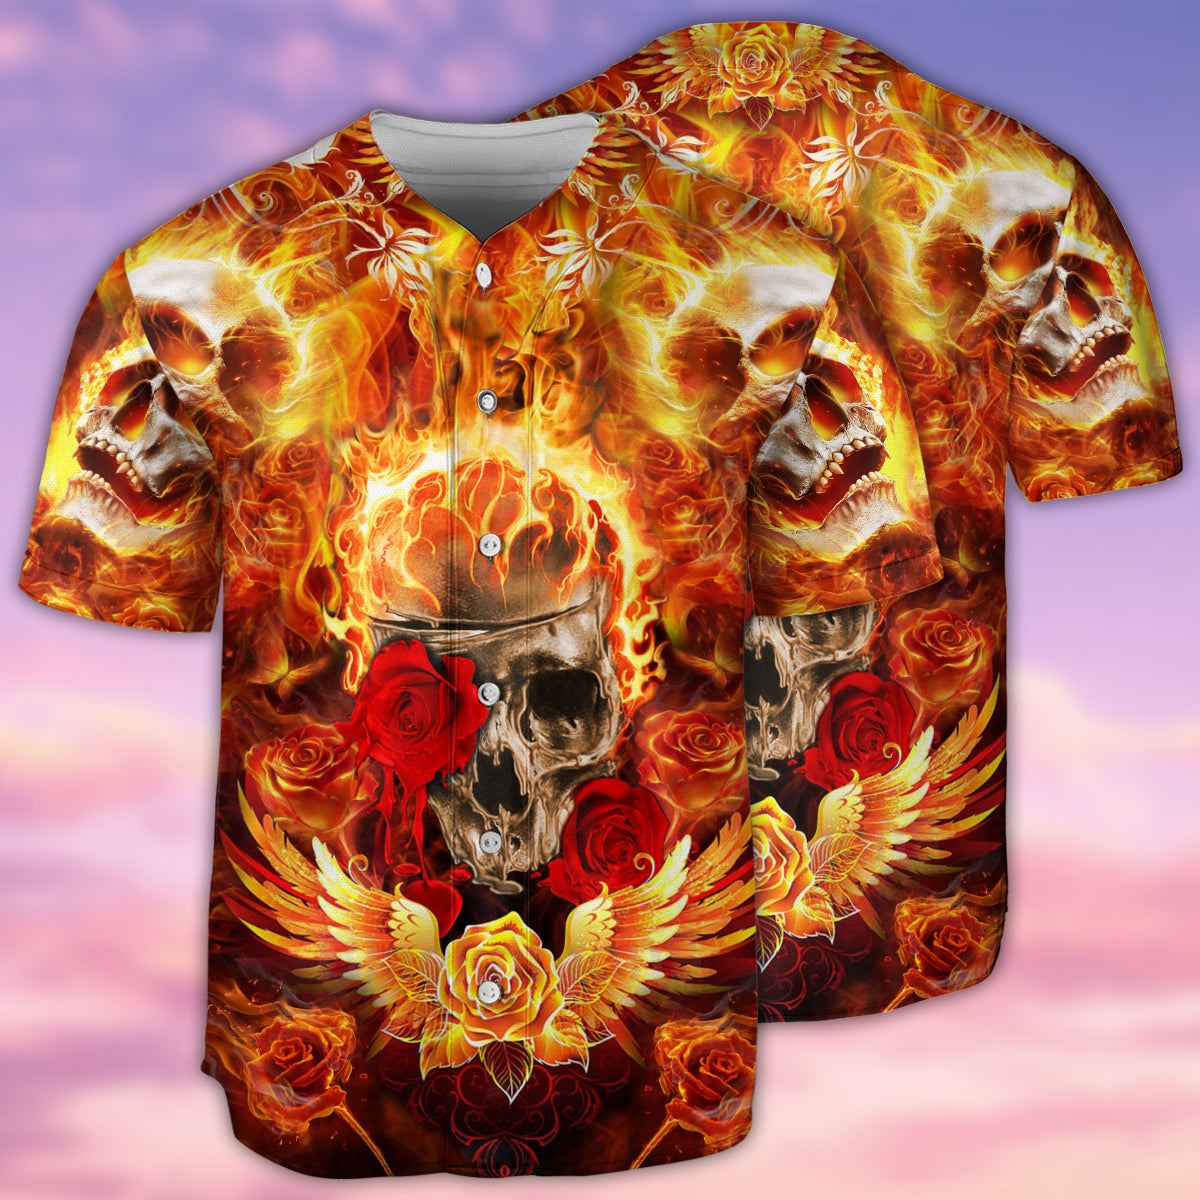 Skull Flaming Rose - Baseball Jersey - Owls Matrix LTD